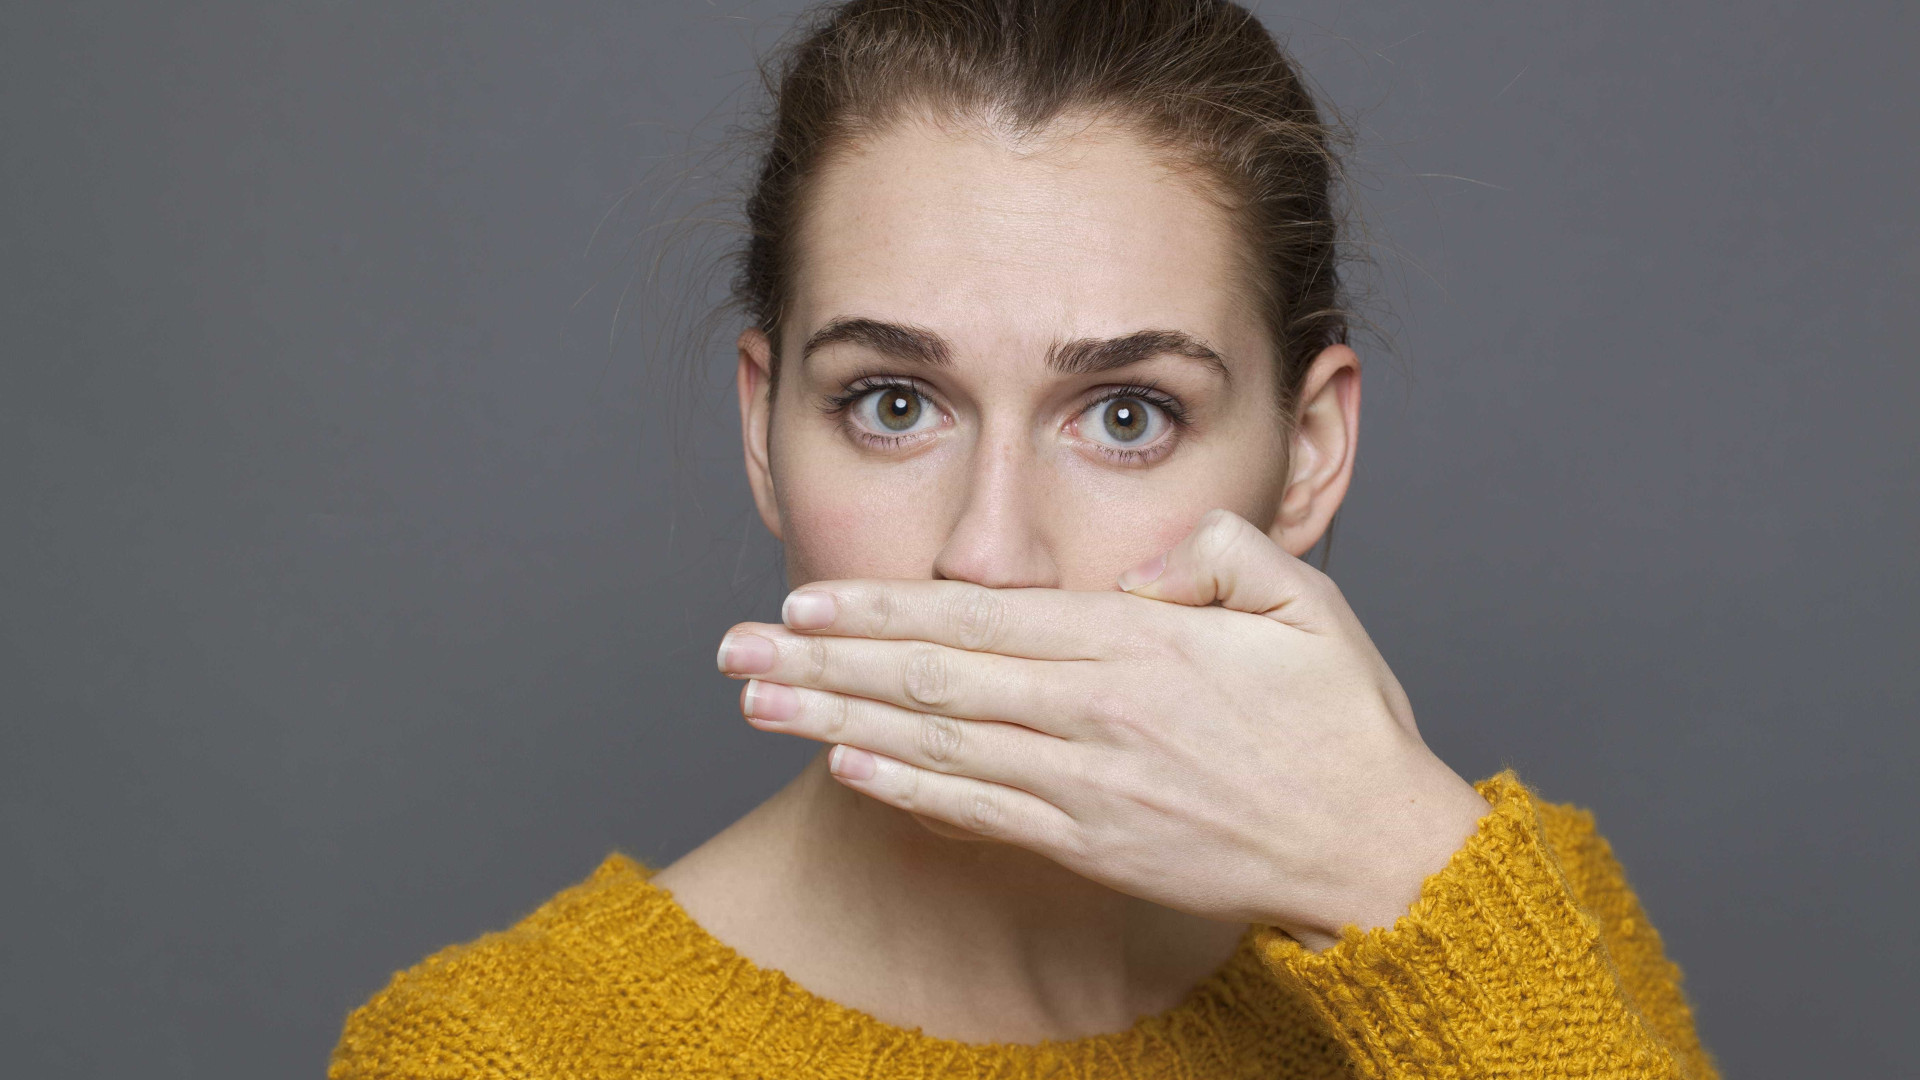 6 dicas para acabar com o mau hálito